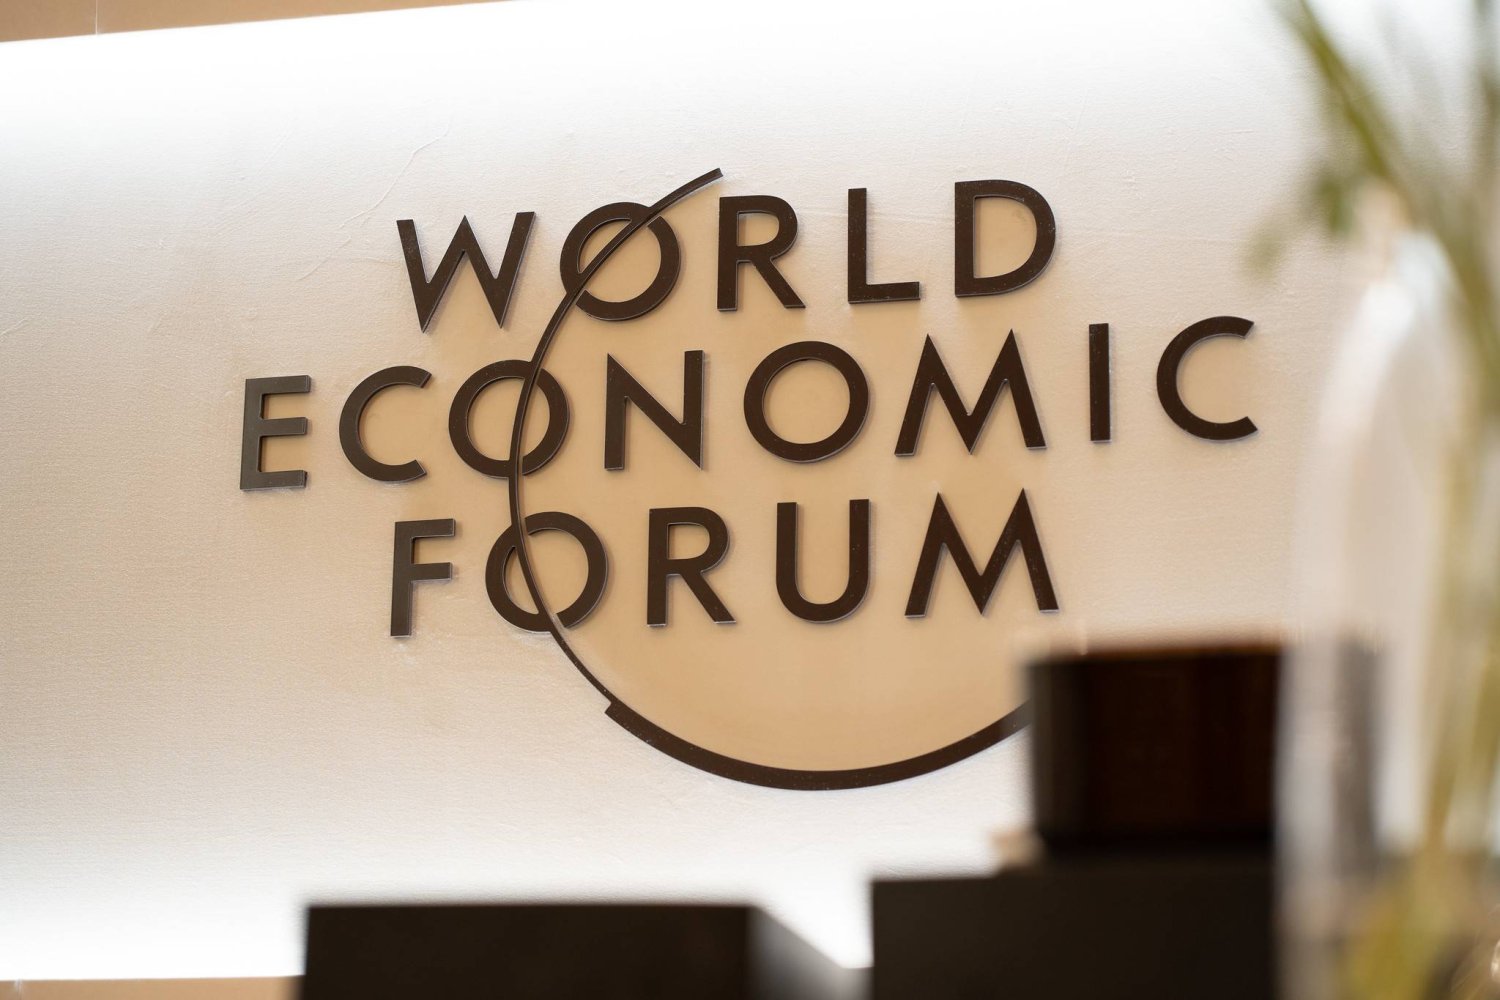 قال الجدعان خلال اجتماعات المنتدى الاقتصادي في الرياض إن المخاطر الجيوسياسية أولوية بالنسبة للاقتصاد العالمي (موقع المنتدى)